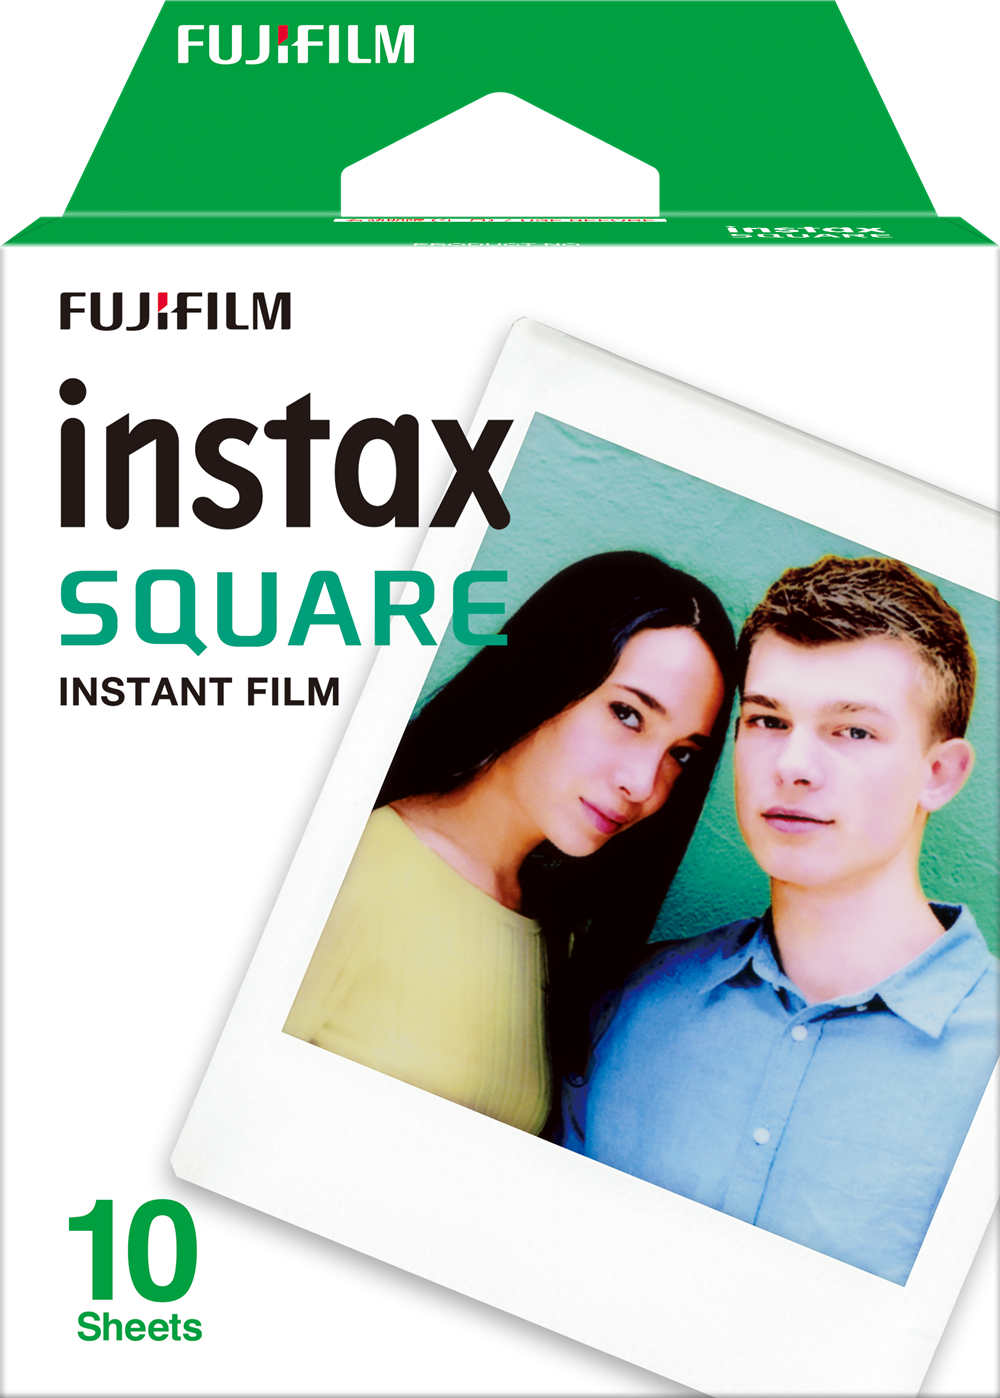 ภาพประกอบคำอธิบาย Flm Instax Square Film - Instant Film ฟิล์มขอบขาว 10 แผ่น - ของแท้ FUJI TH